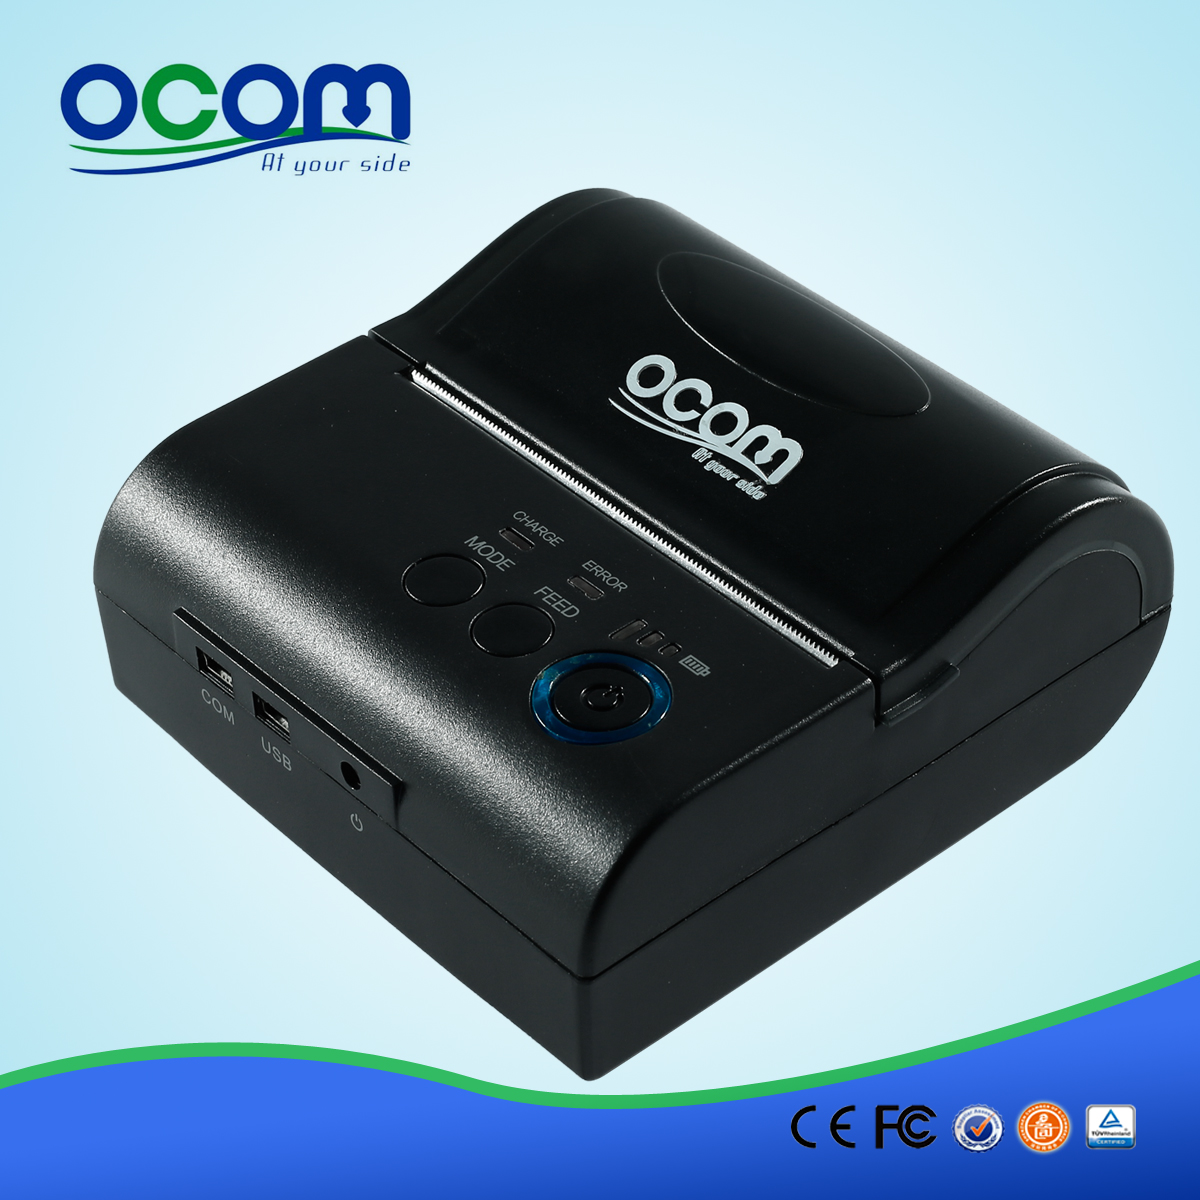 OCPP-M082: Taxi stampare una ricevuta con l'elegante aspetto di 80 millimetri stampante termica Bluetooth